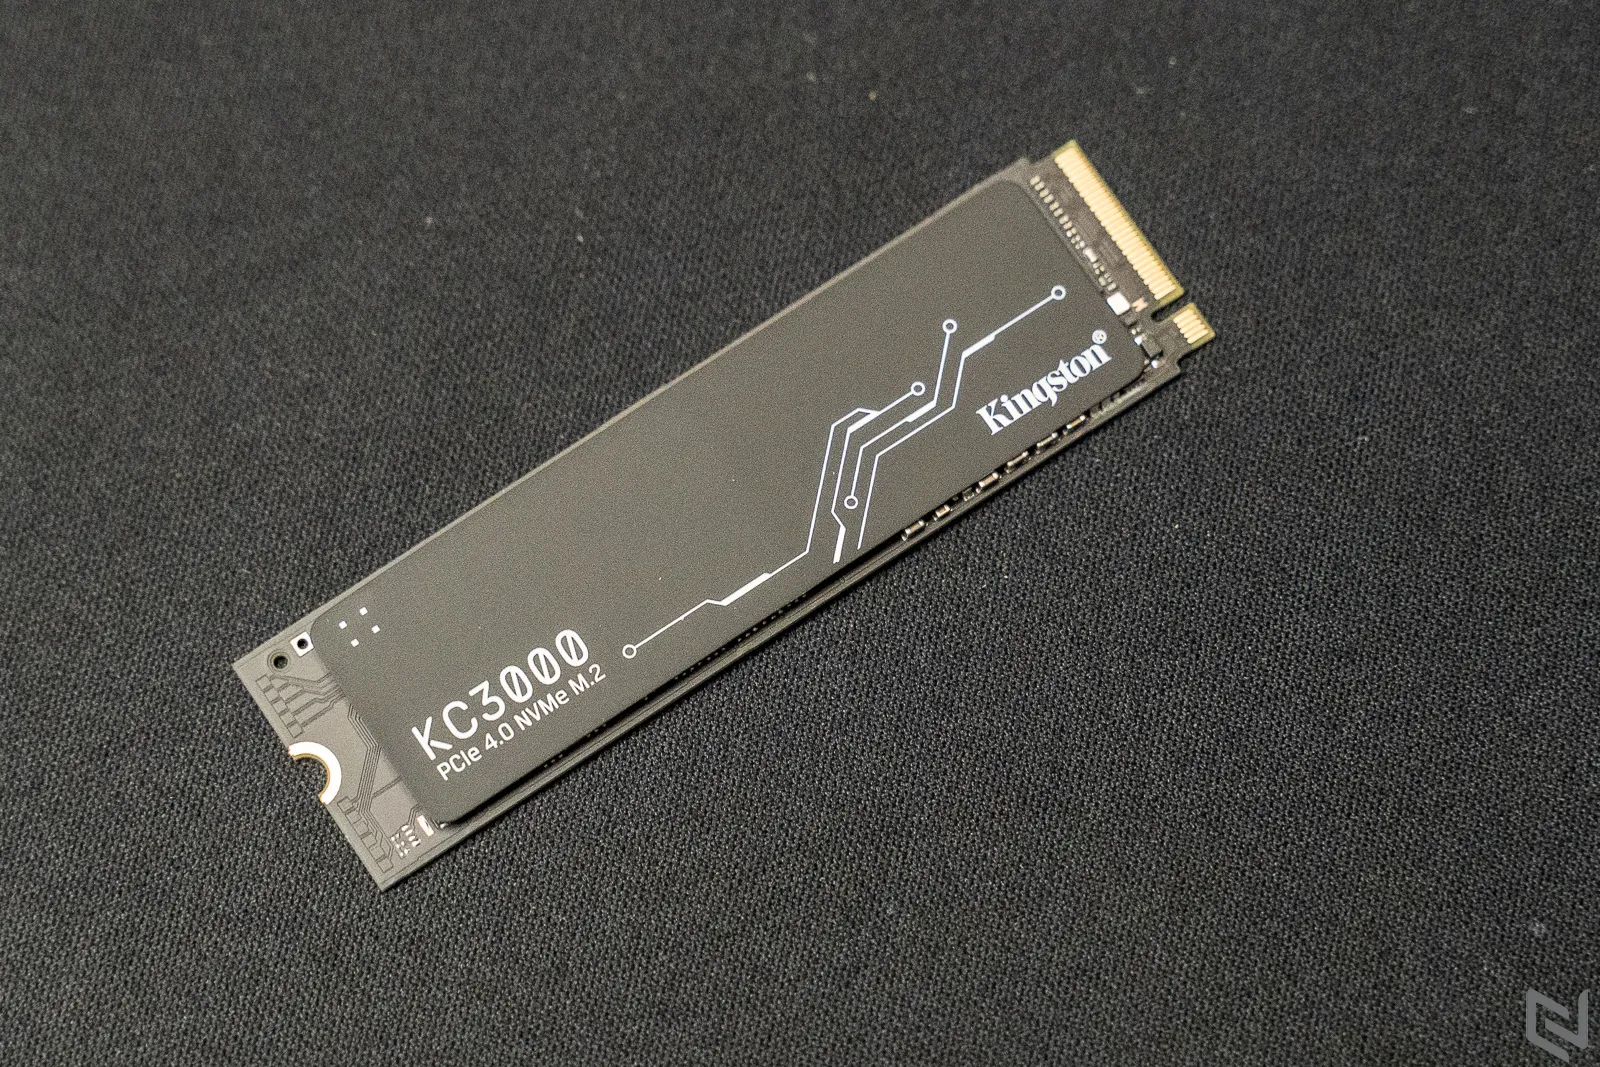 Đánh giá SSD Kingston KC3000 PCIe 4.0 NVMe M.2: Hiệu năng vượt trội, giao thức PCIe 4.0 với nhiều tuỳ chọn bộ nhớ